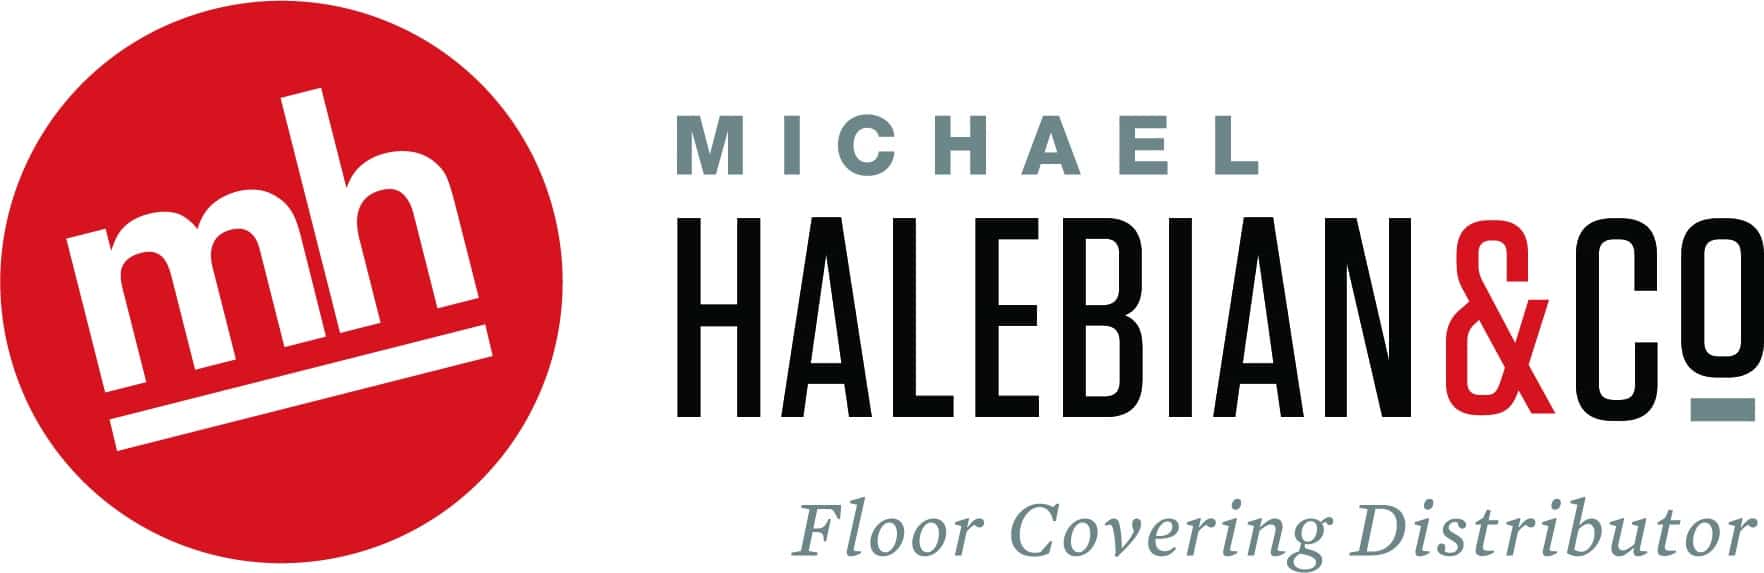 Michael Halebian